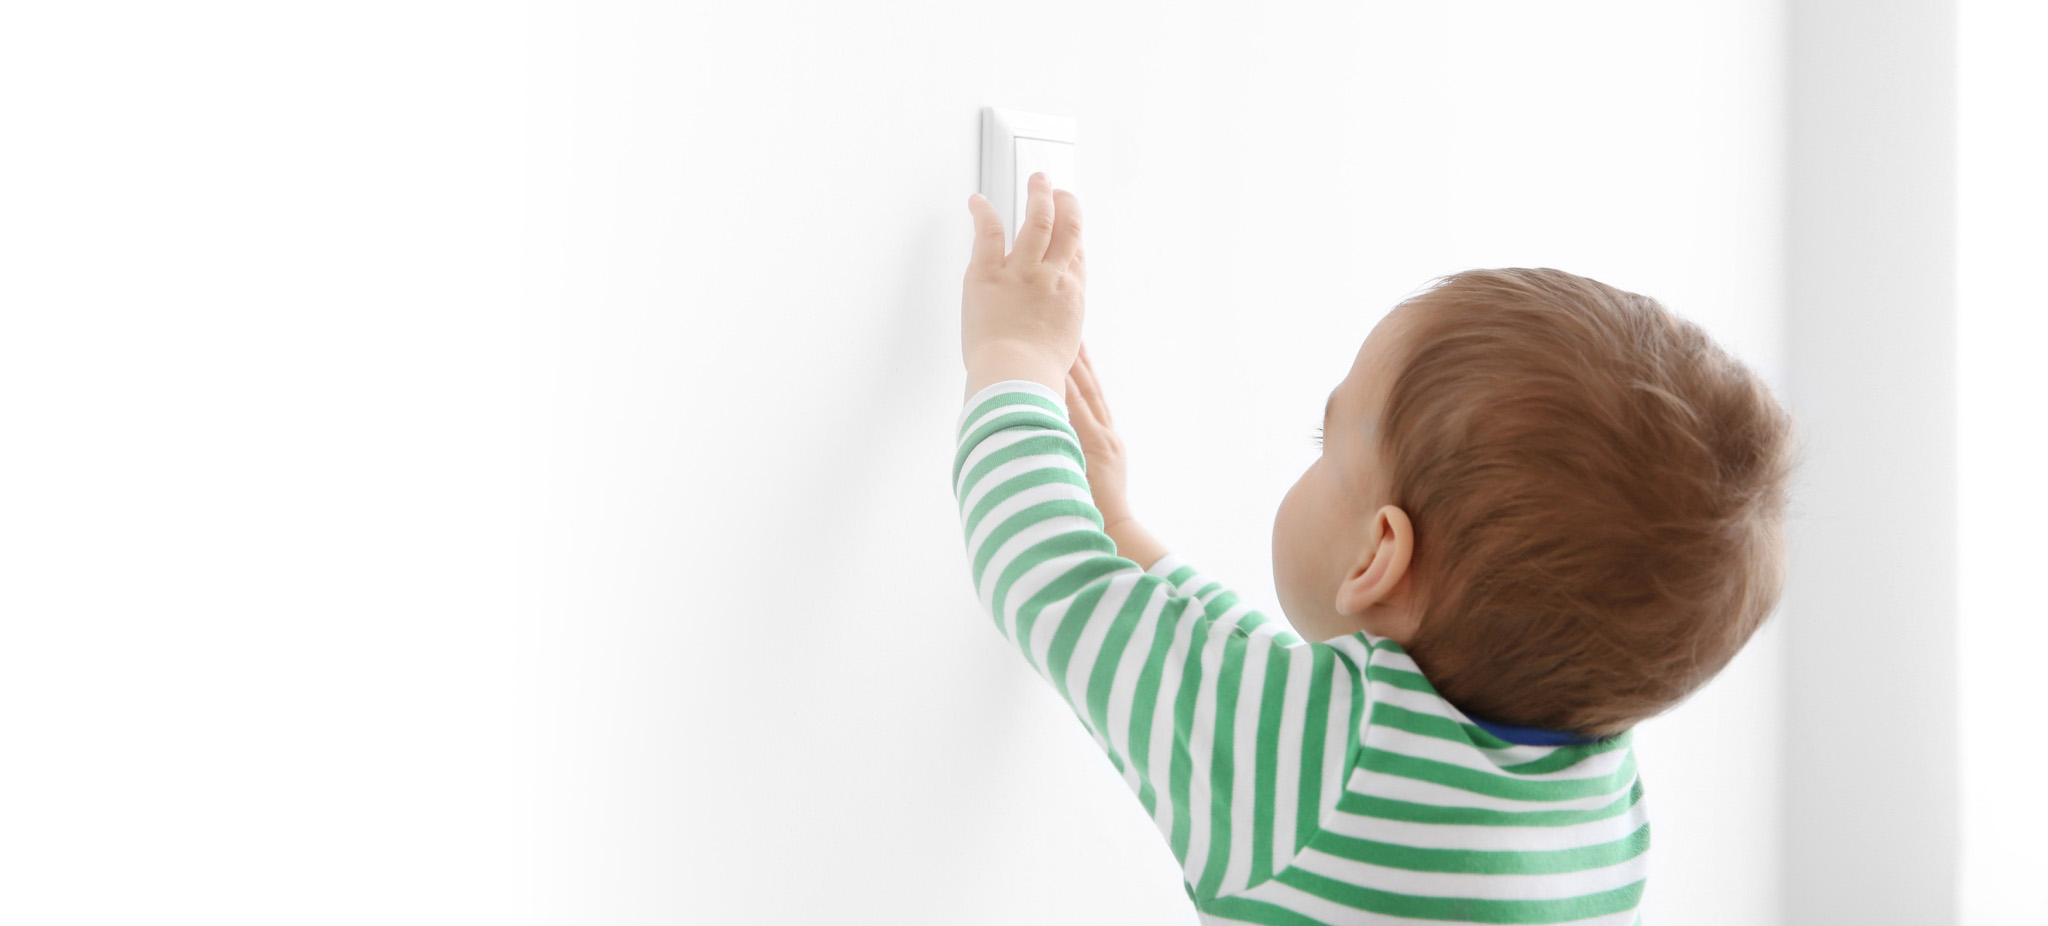 Baby touching smart light switch